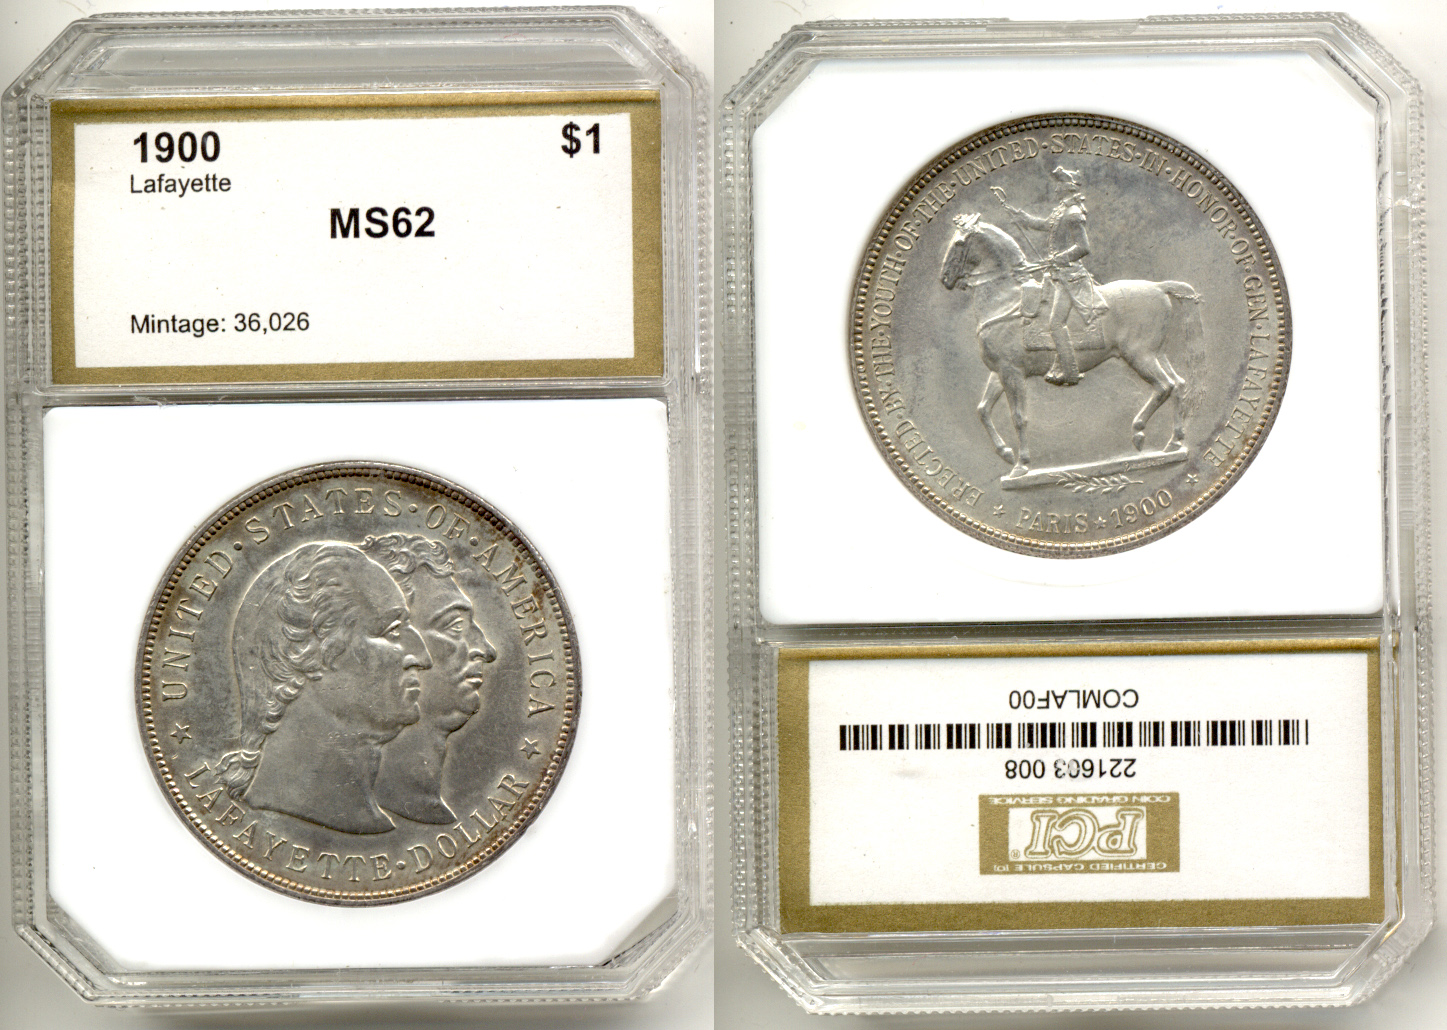 1900 Lafayette Commemorative Silver Dollar PCI MS-62